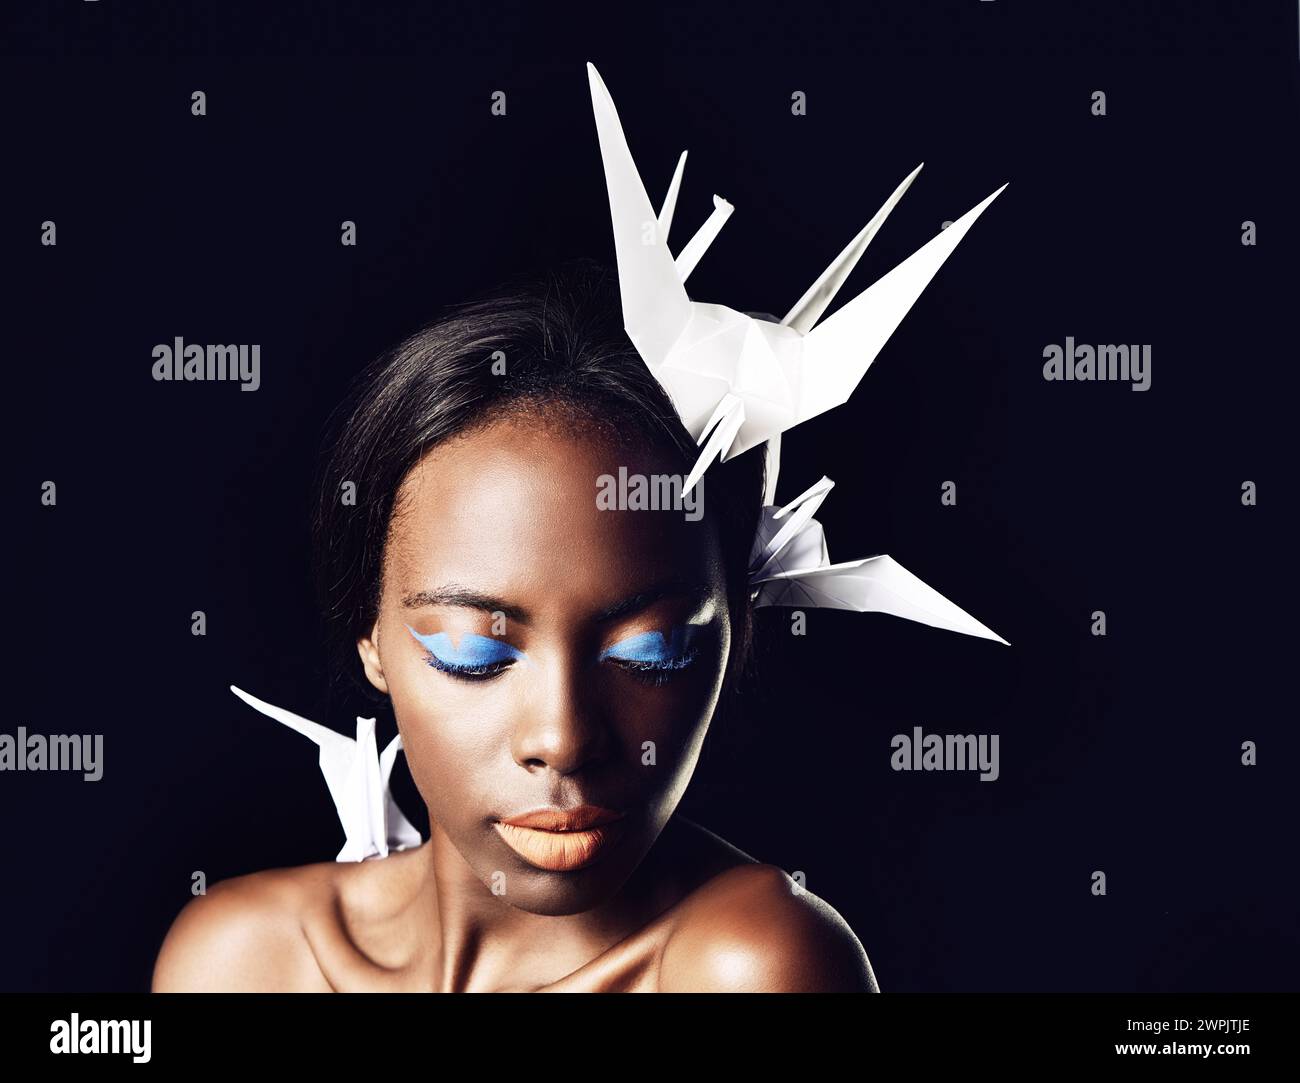 Schwarze Frau, Make-up und schöne Kunst mit Kosmetik, Origami-Vögeln oder Taube auf dunklem Studiohintergrund. Nahaufnahme oder Gesicht einer afrikanischen weiblichen Person oder eines afrikanischen Models Stockfoto